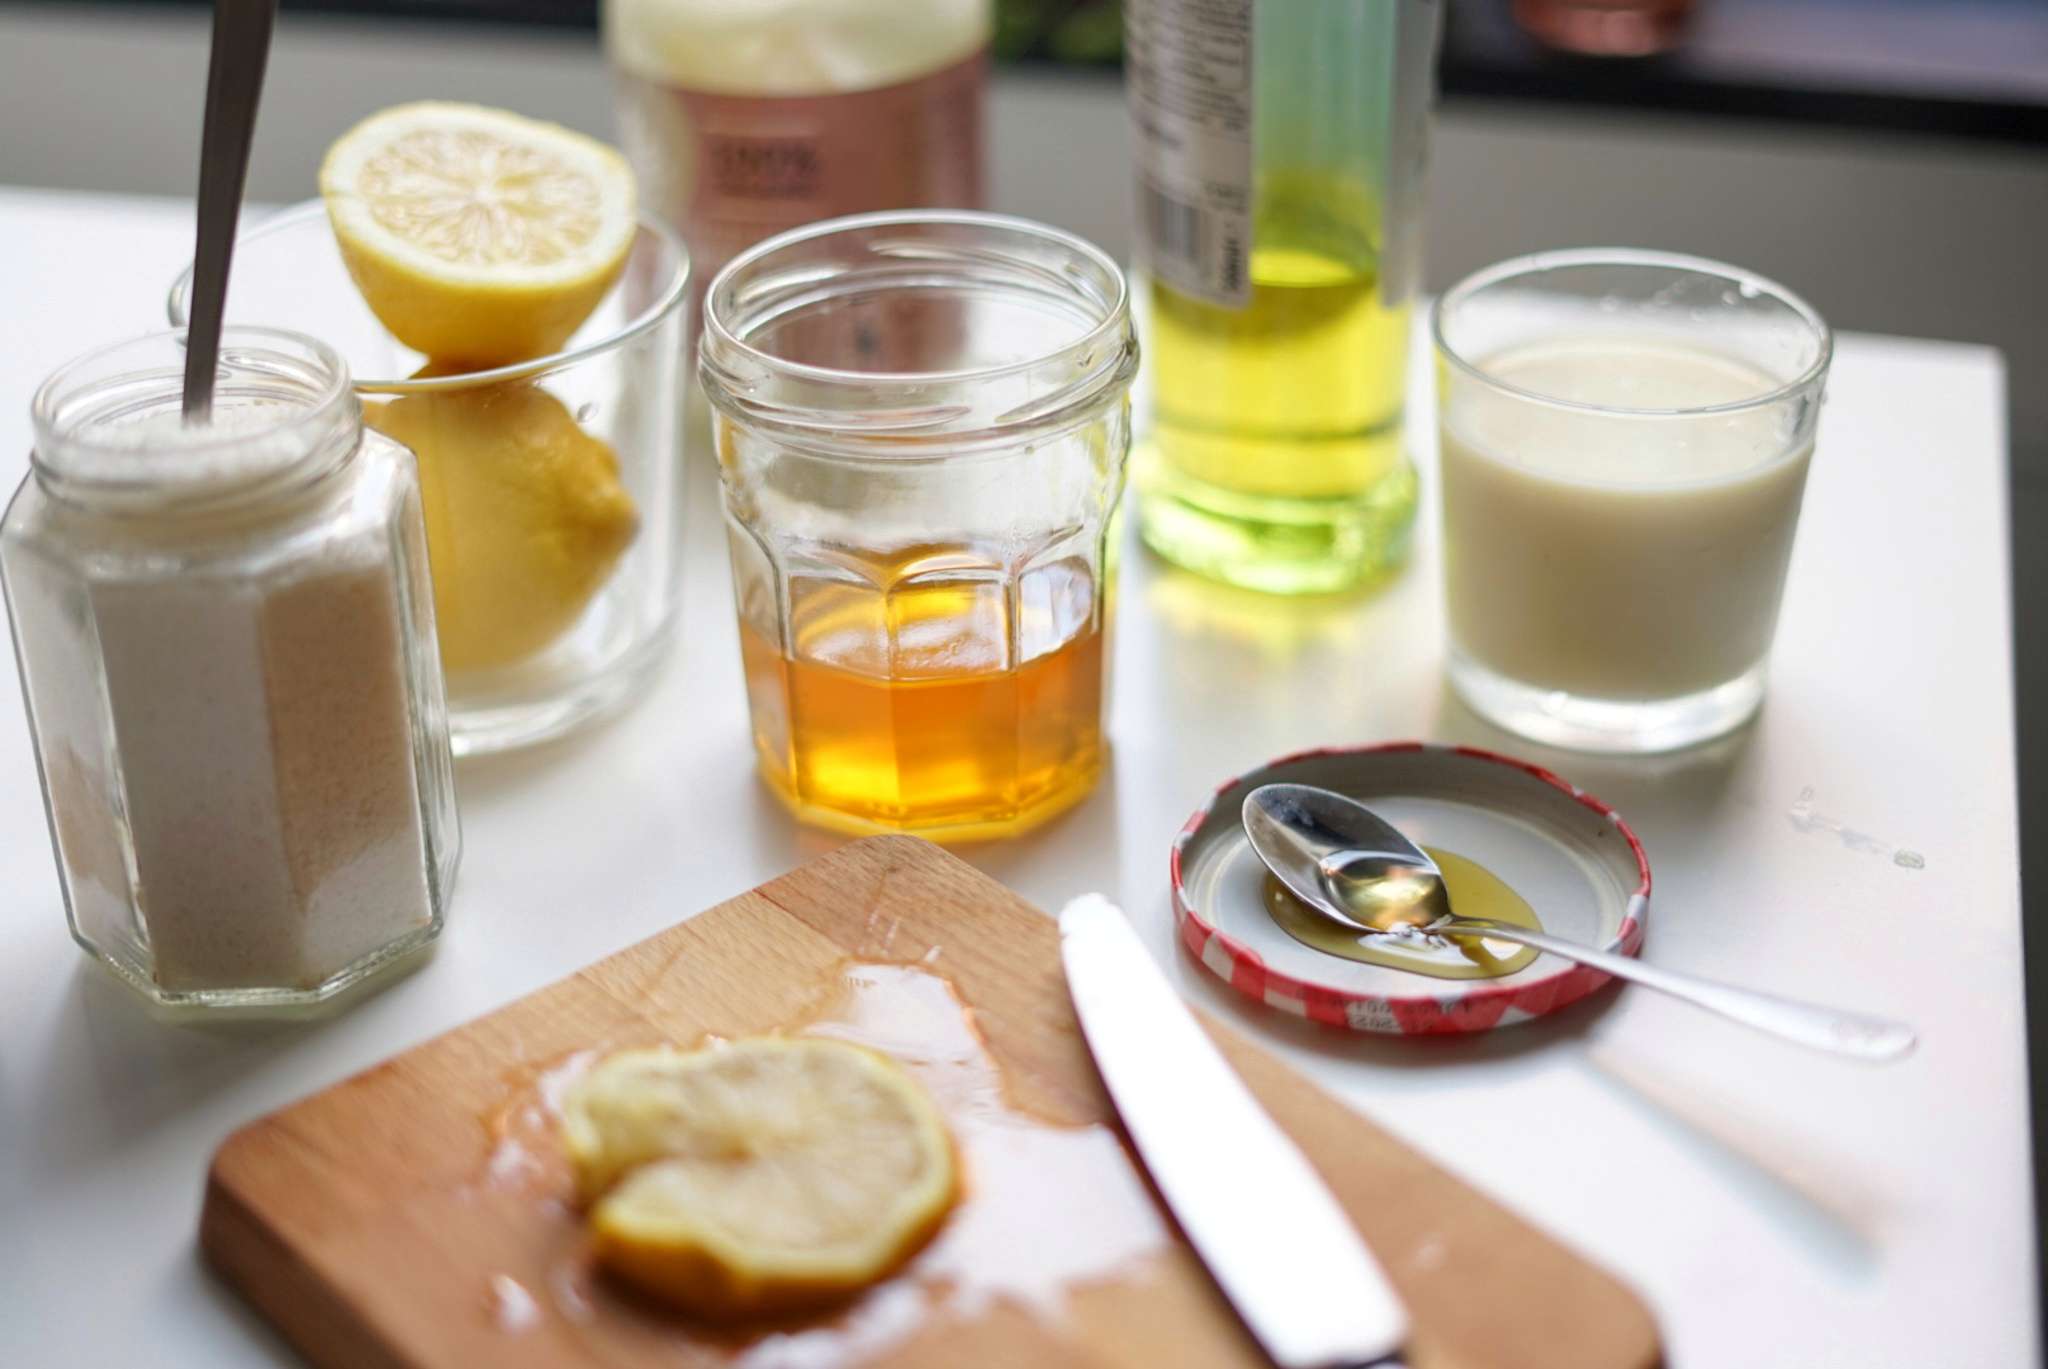 miel, limones cortados, leche y almendras molidas sobre la mesa para un tratamiento de belleza natural